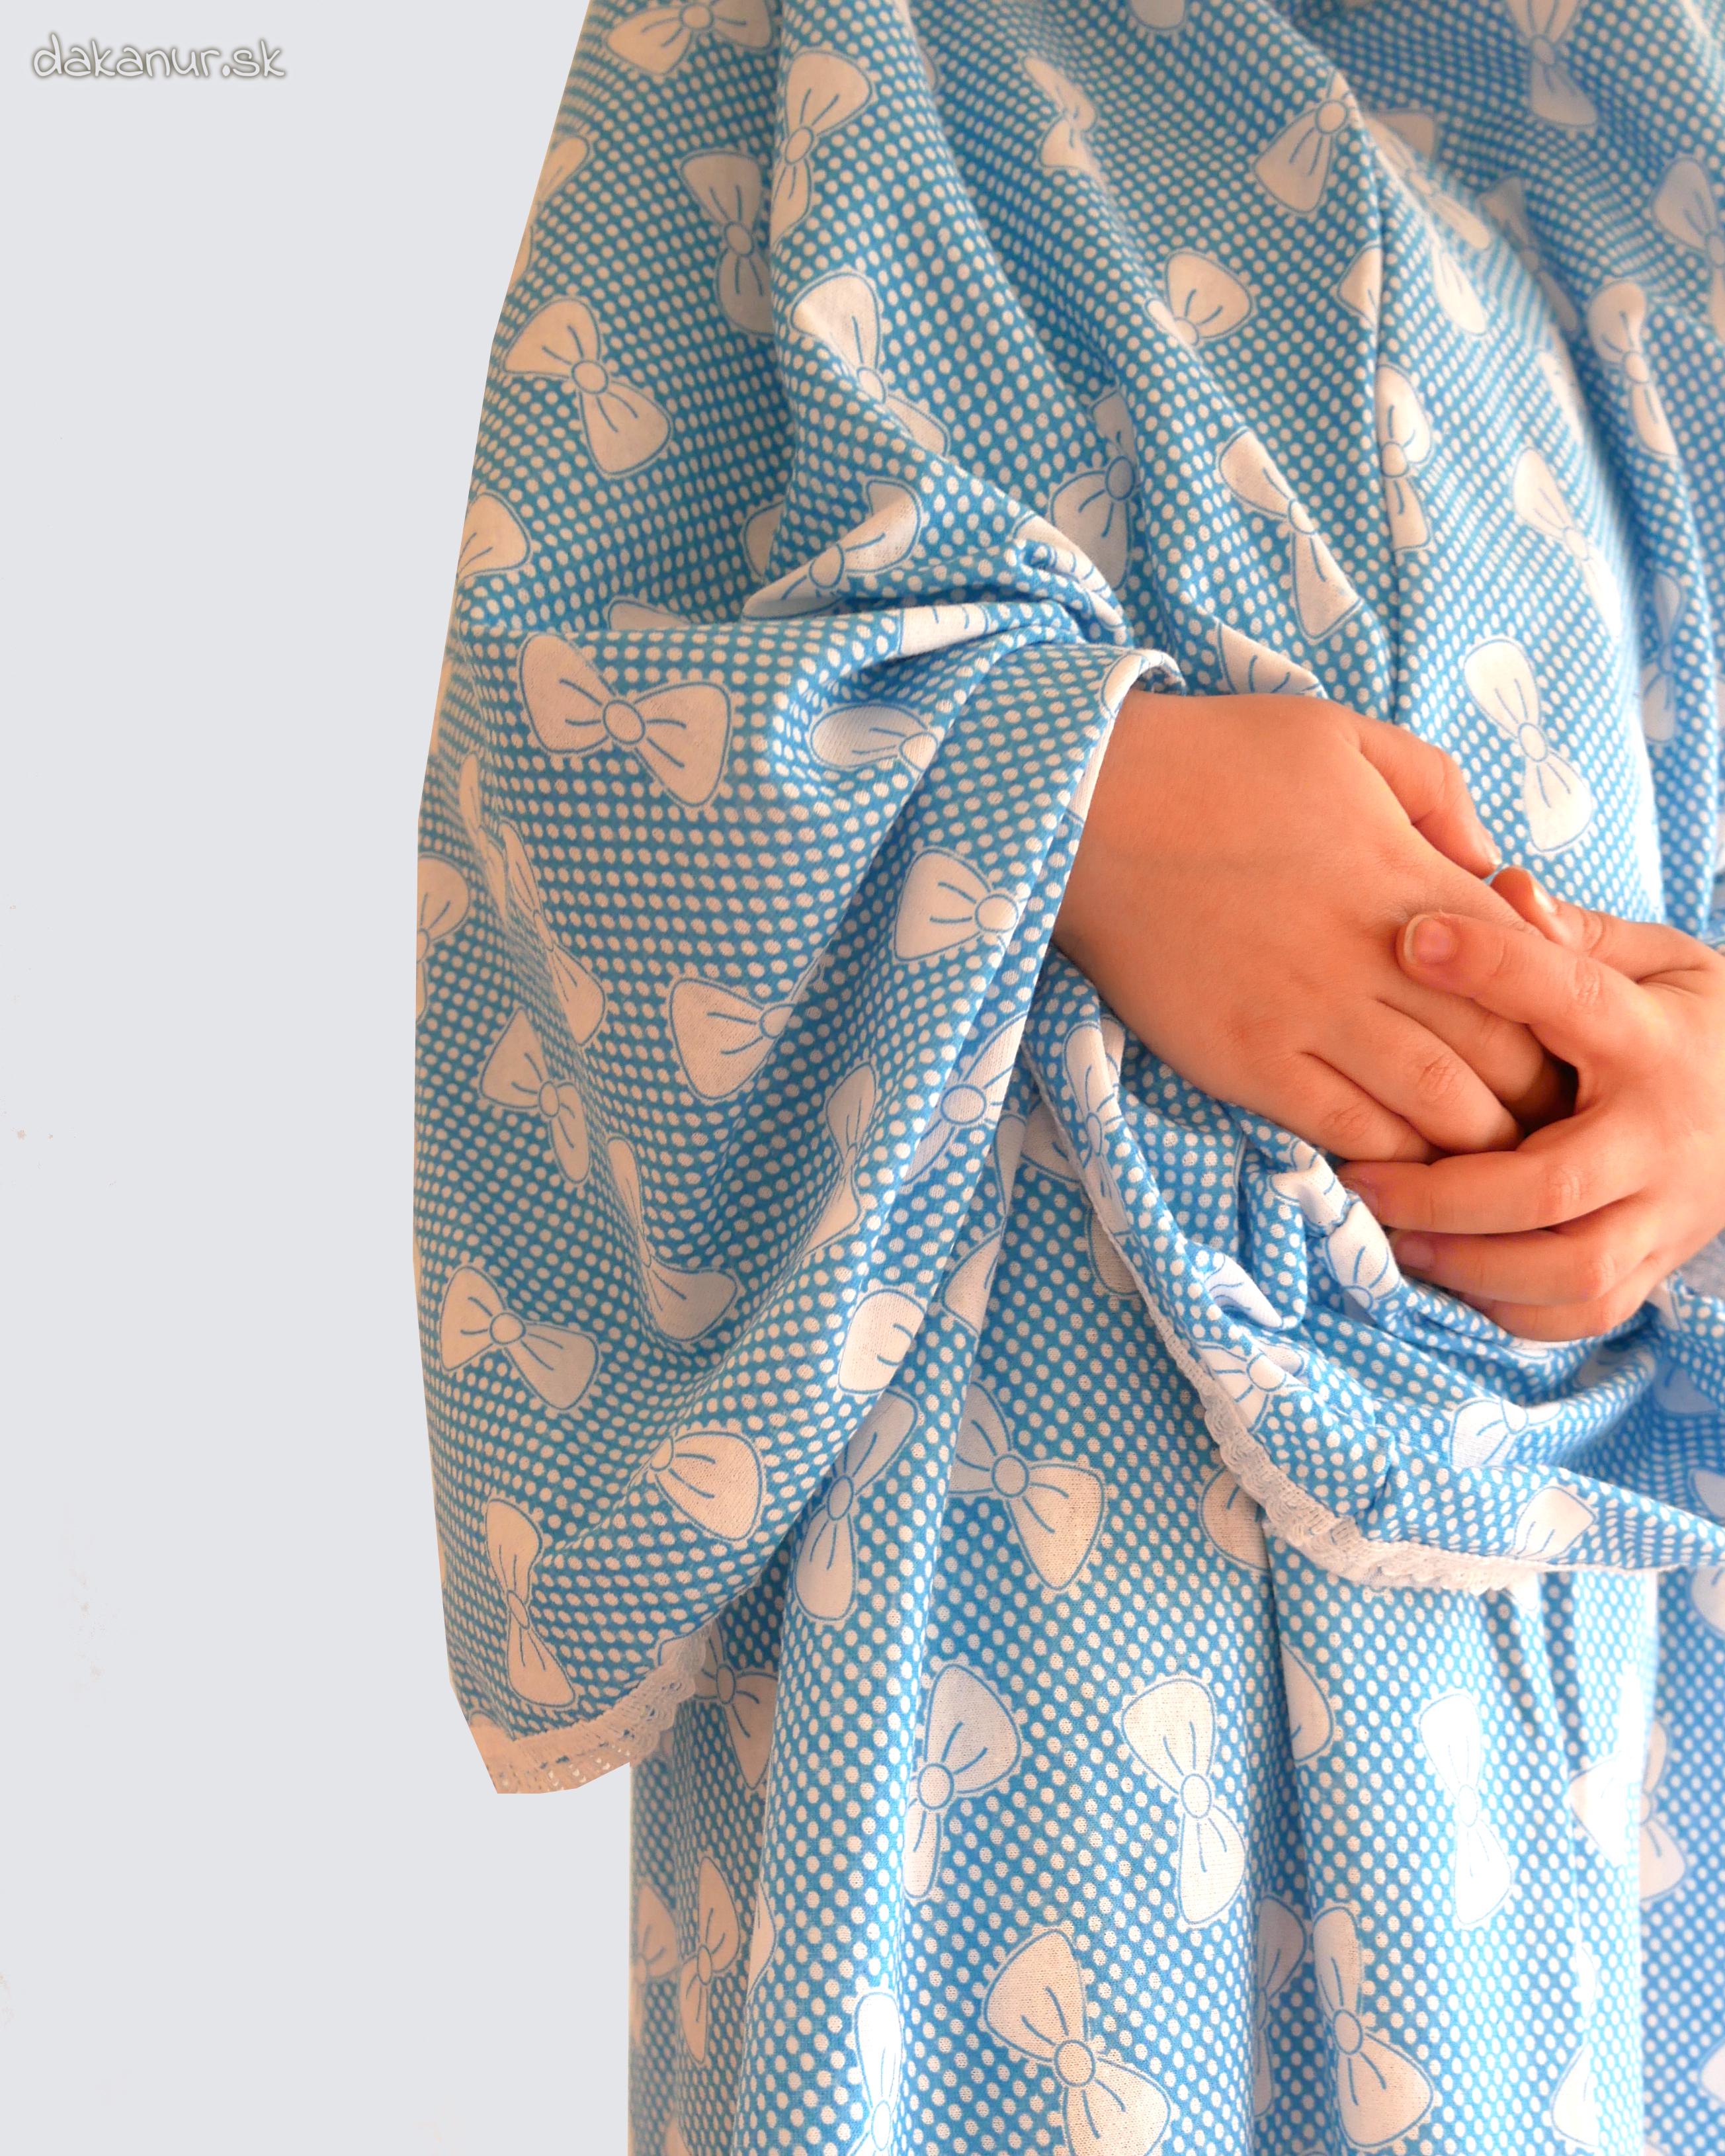 Modré dievčenské modlitebné šaty